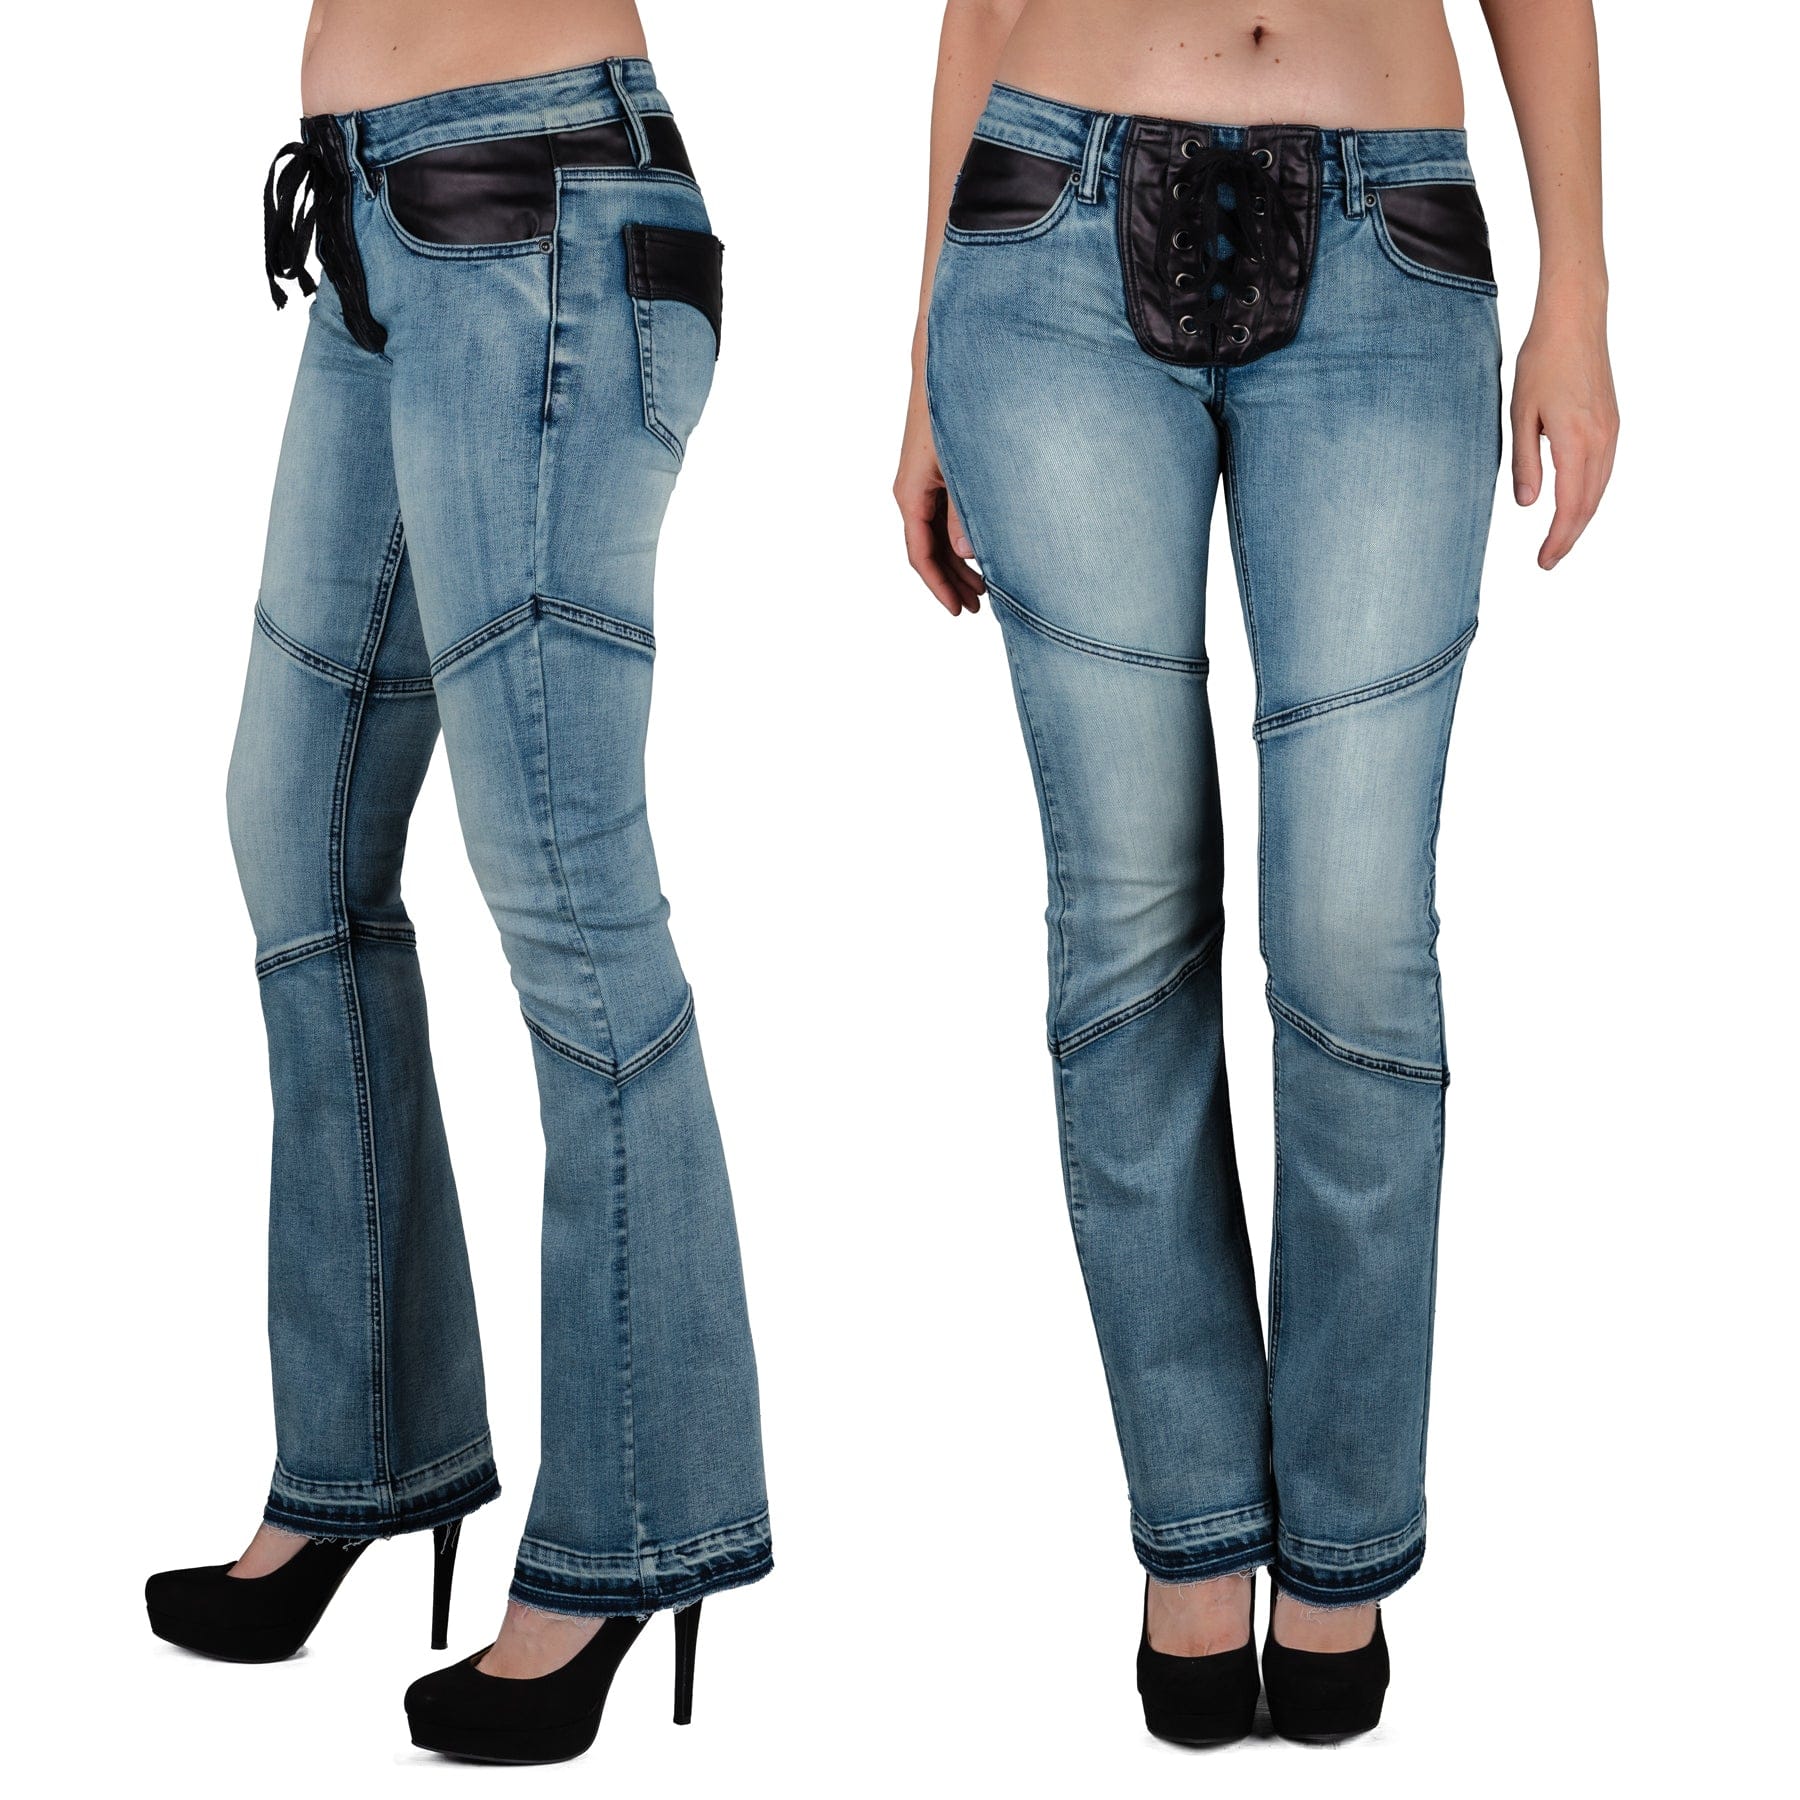 Wornstar Clothing Unisex Jeans. Troubadour Denim Jeans - Classic Blue